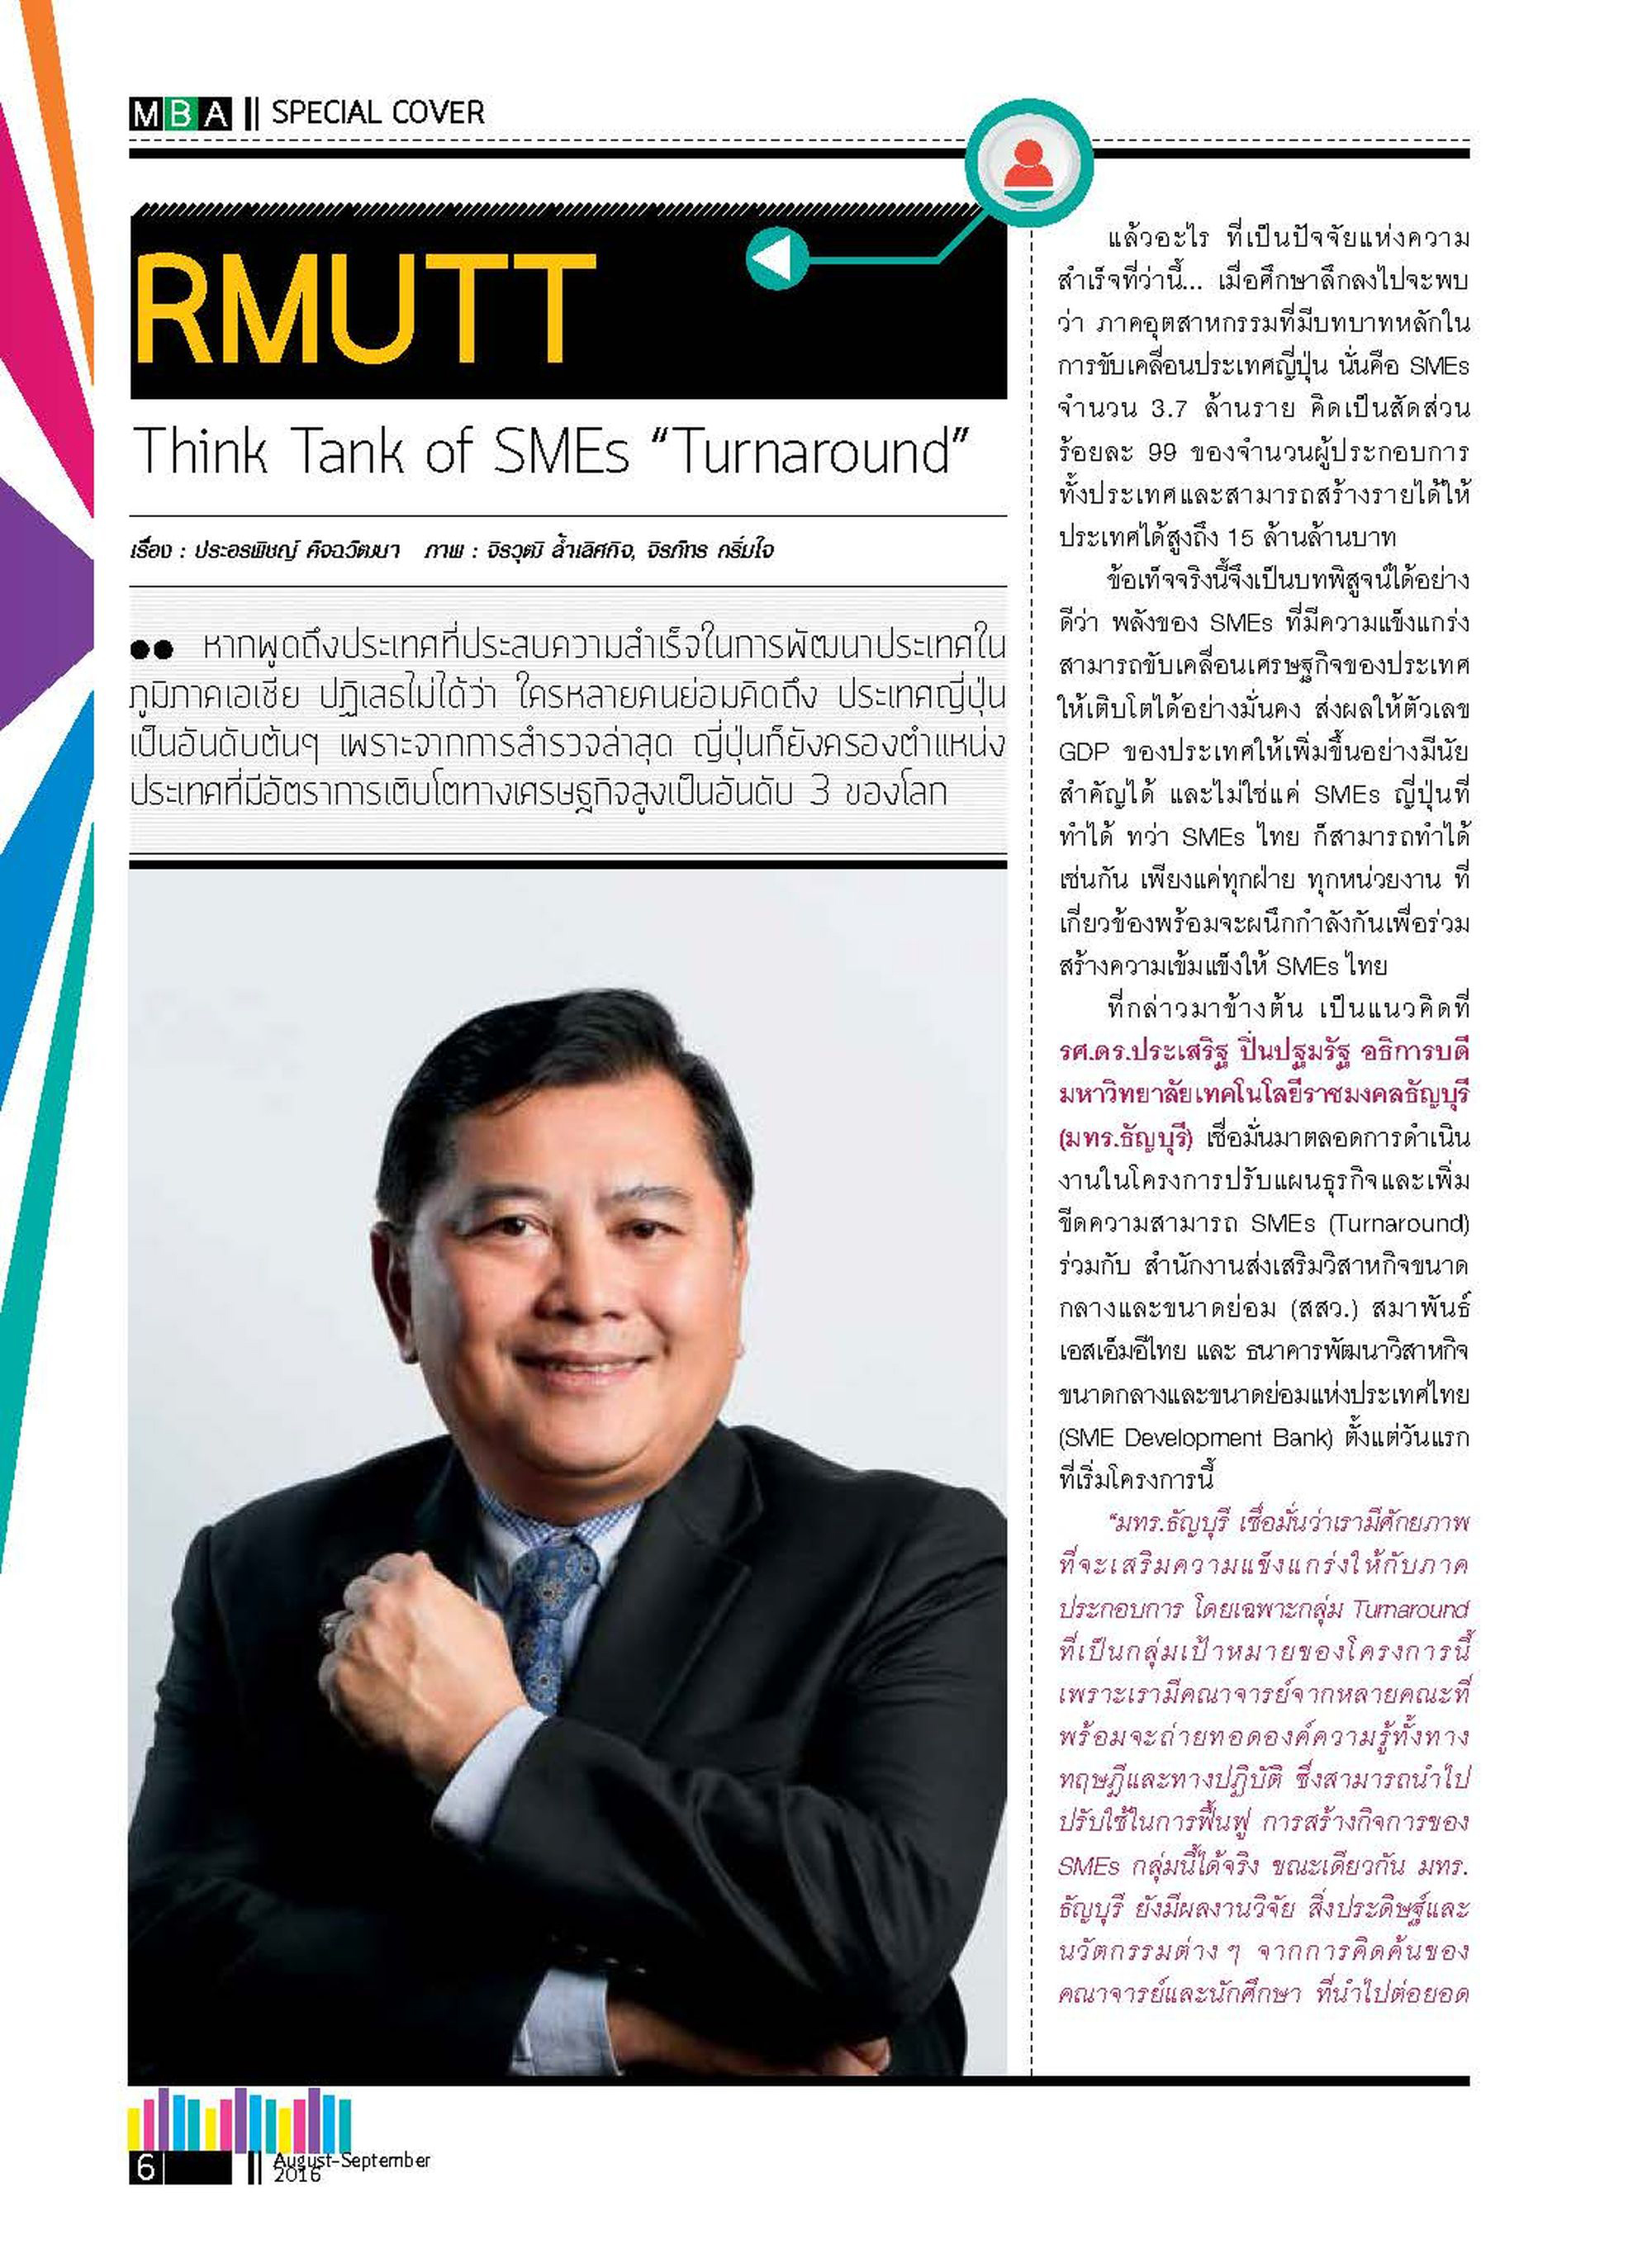 Power Up Thailand SMEs “Turnaround”